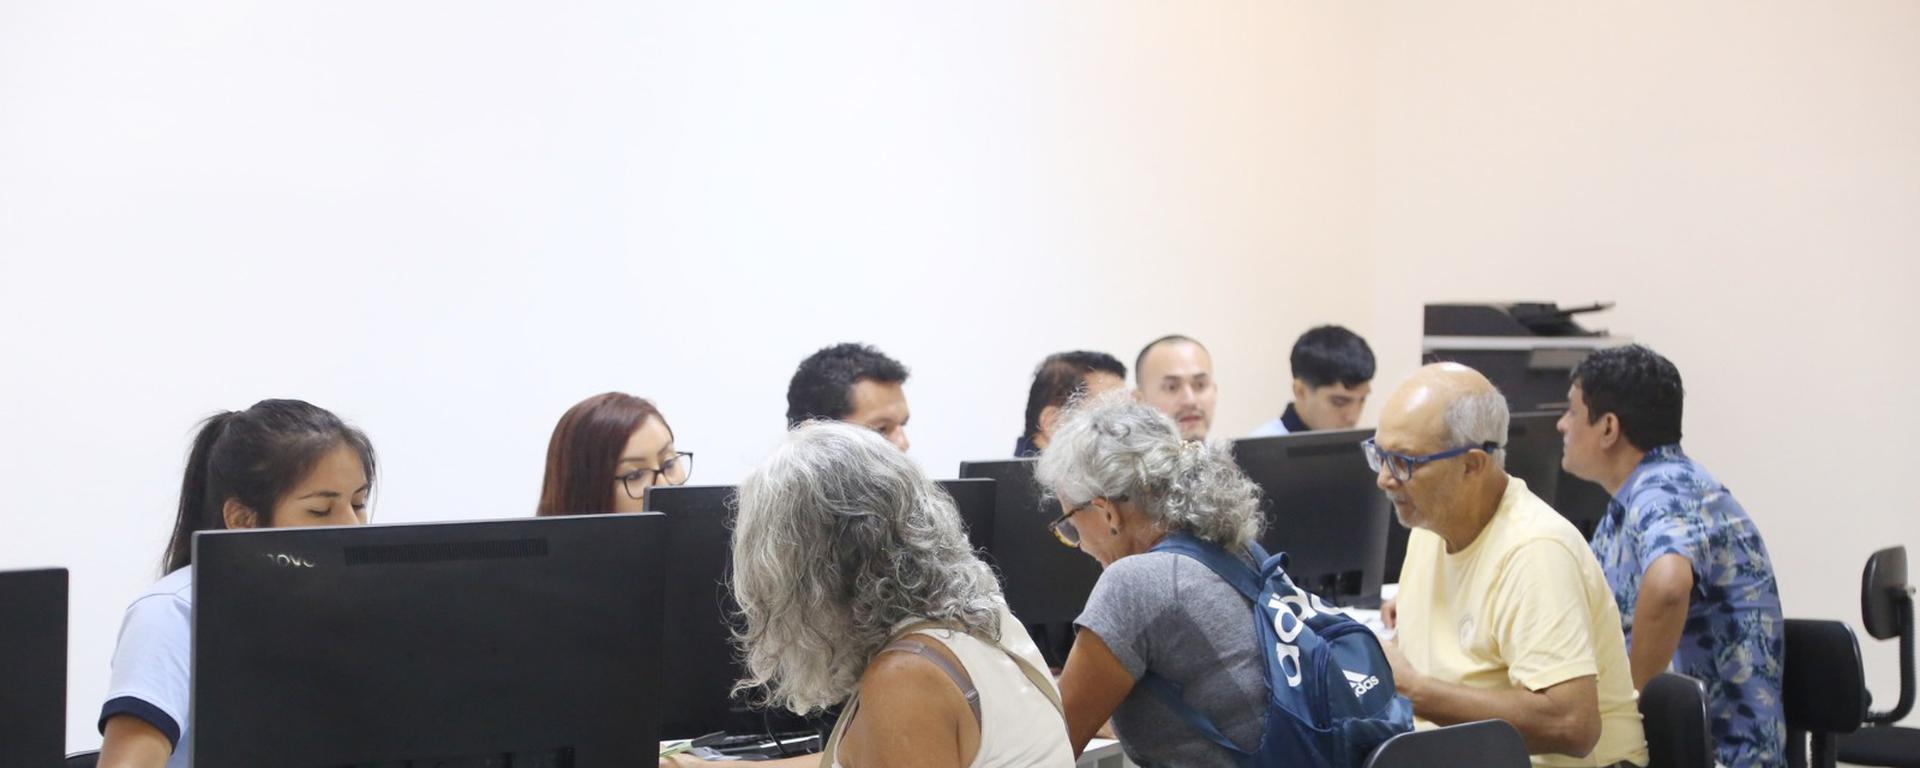 Miraflores: las razones por las que la emblemática sala de arte Luis Miró Quesada Garland se convirtió en un área de cobranza municipal